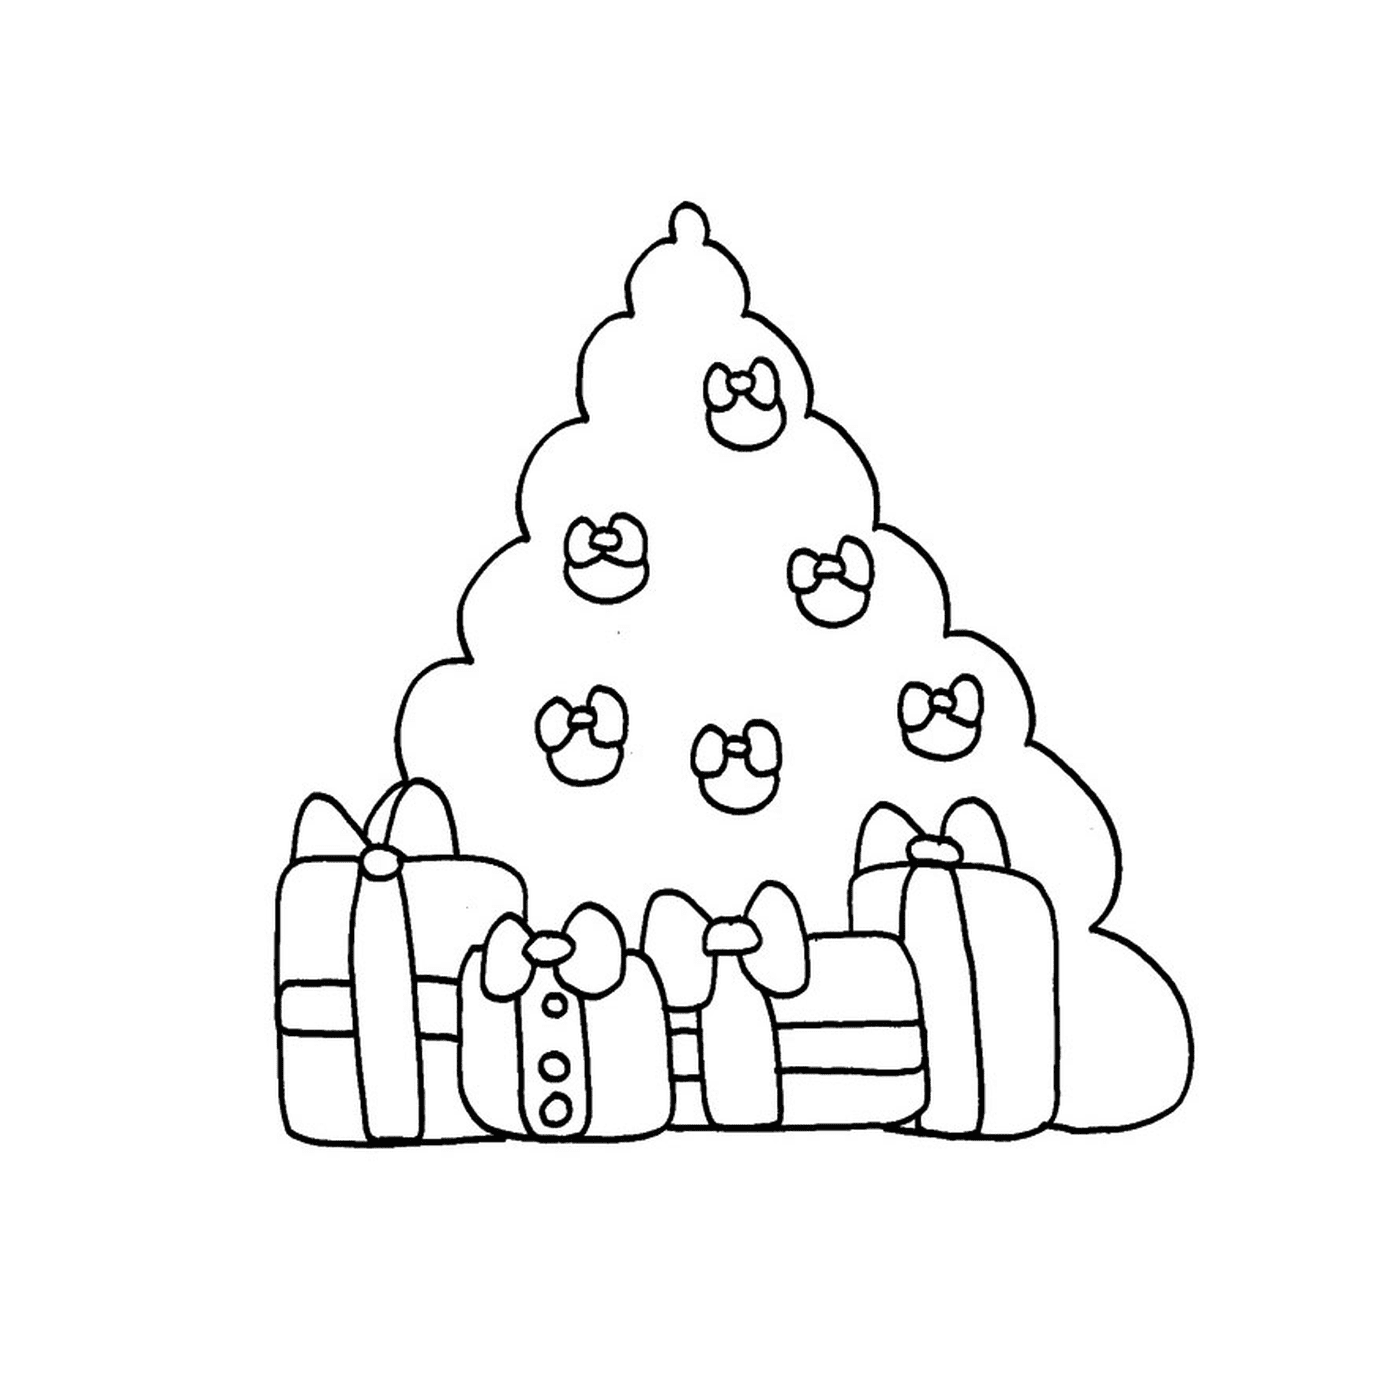  Uma árvore de Natal com presentes nela 